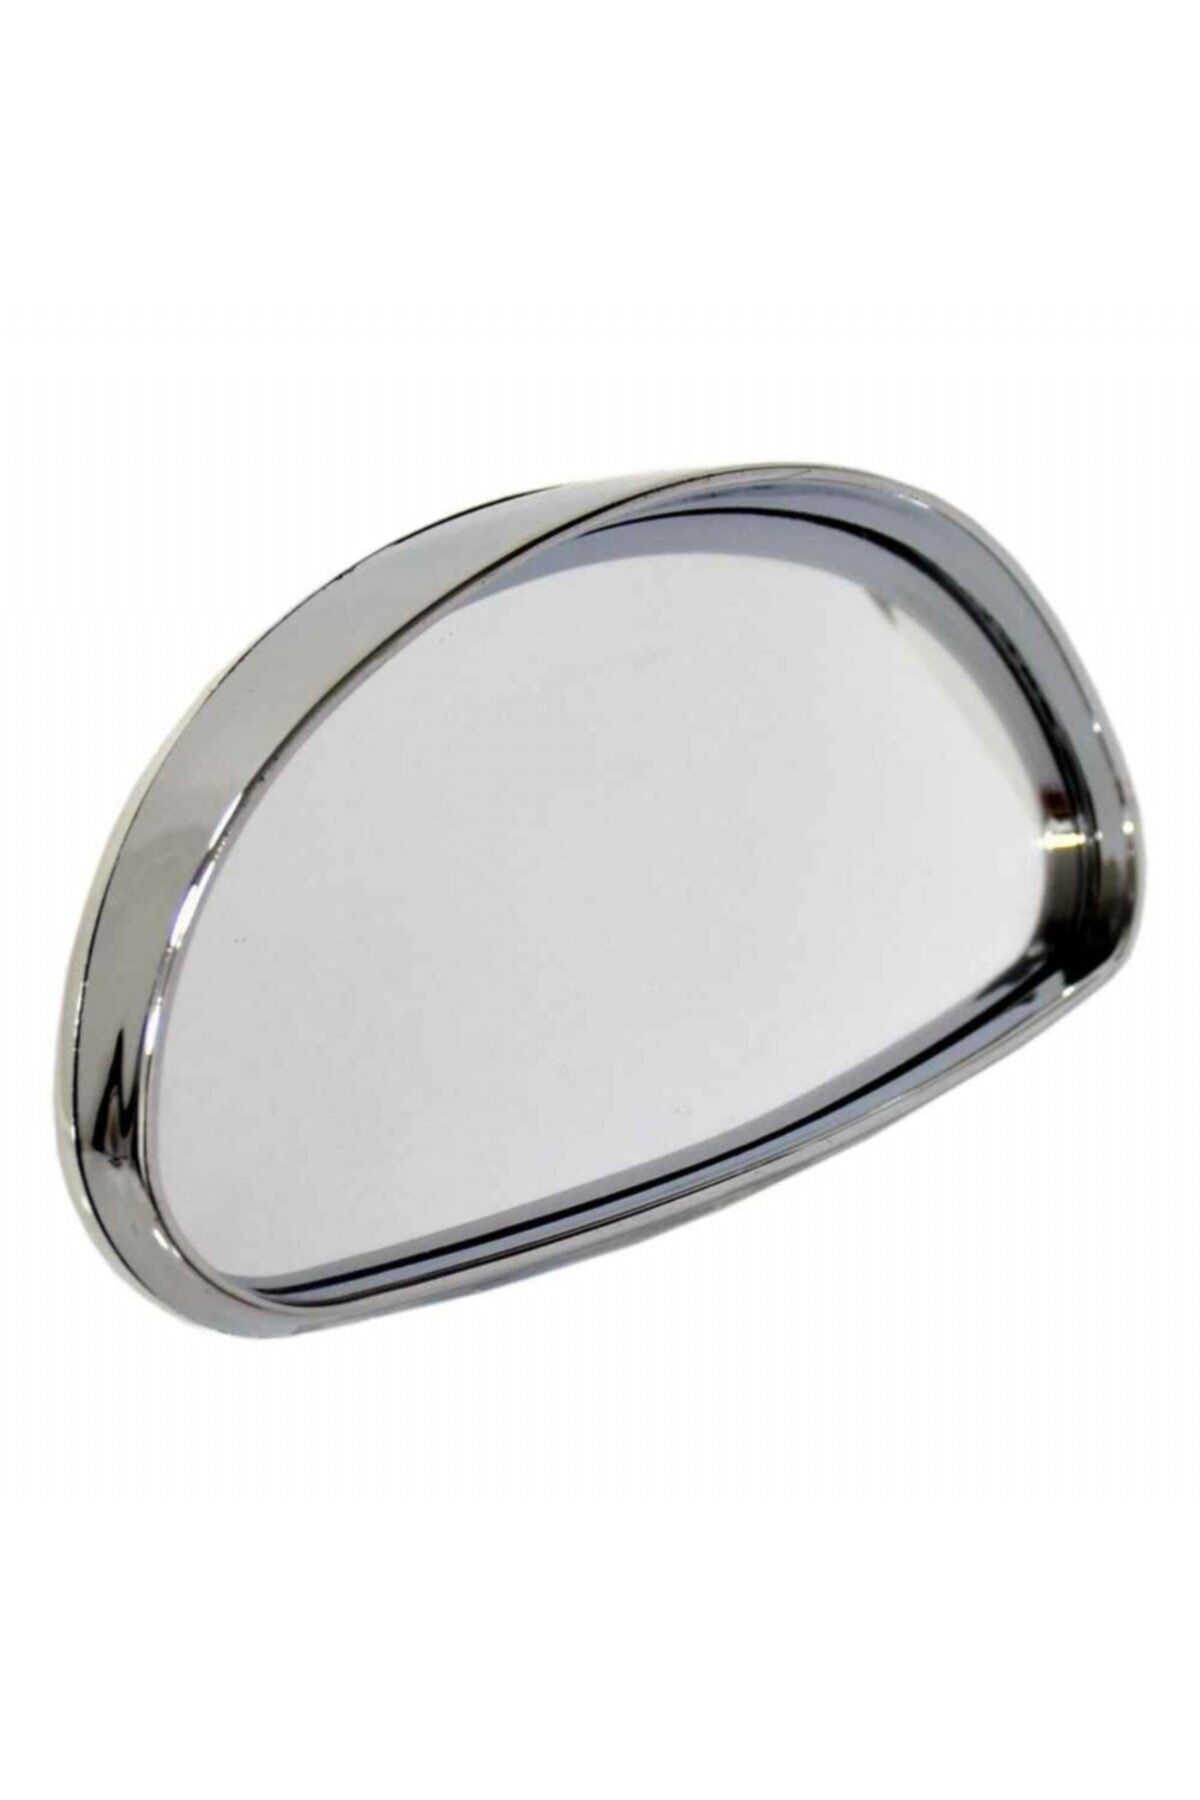 Carub Ayna Üstü Ilave Dış Oval 14x7,5cm Nikel Büyük 2 Adet